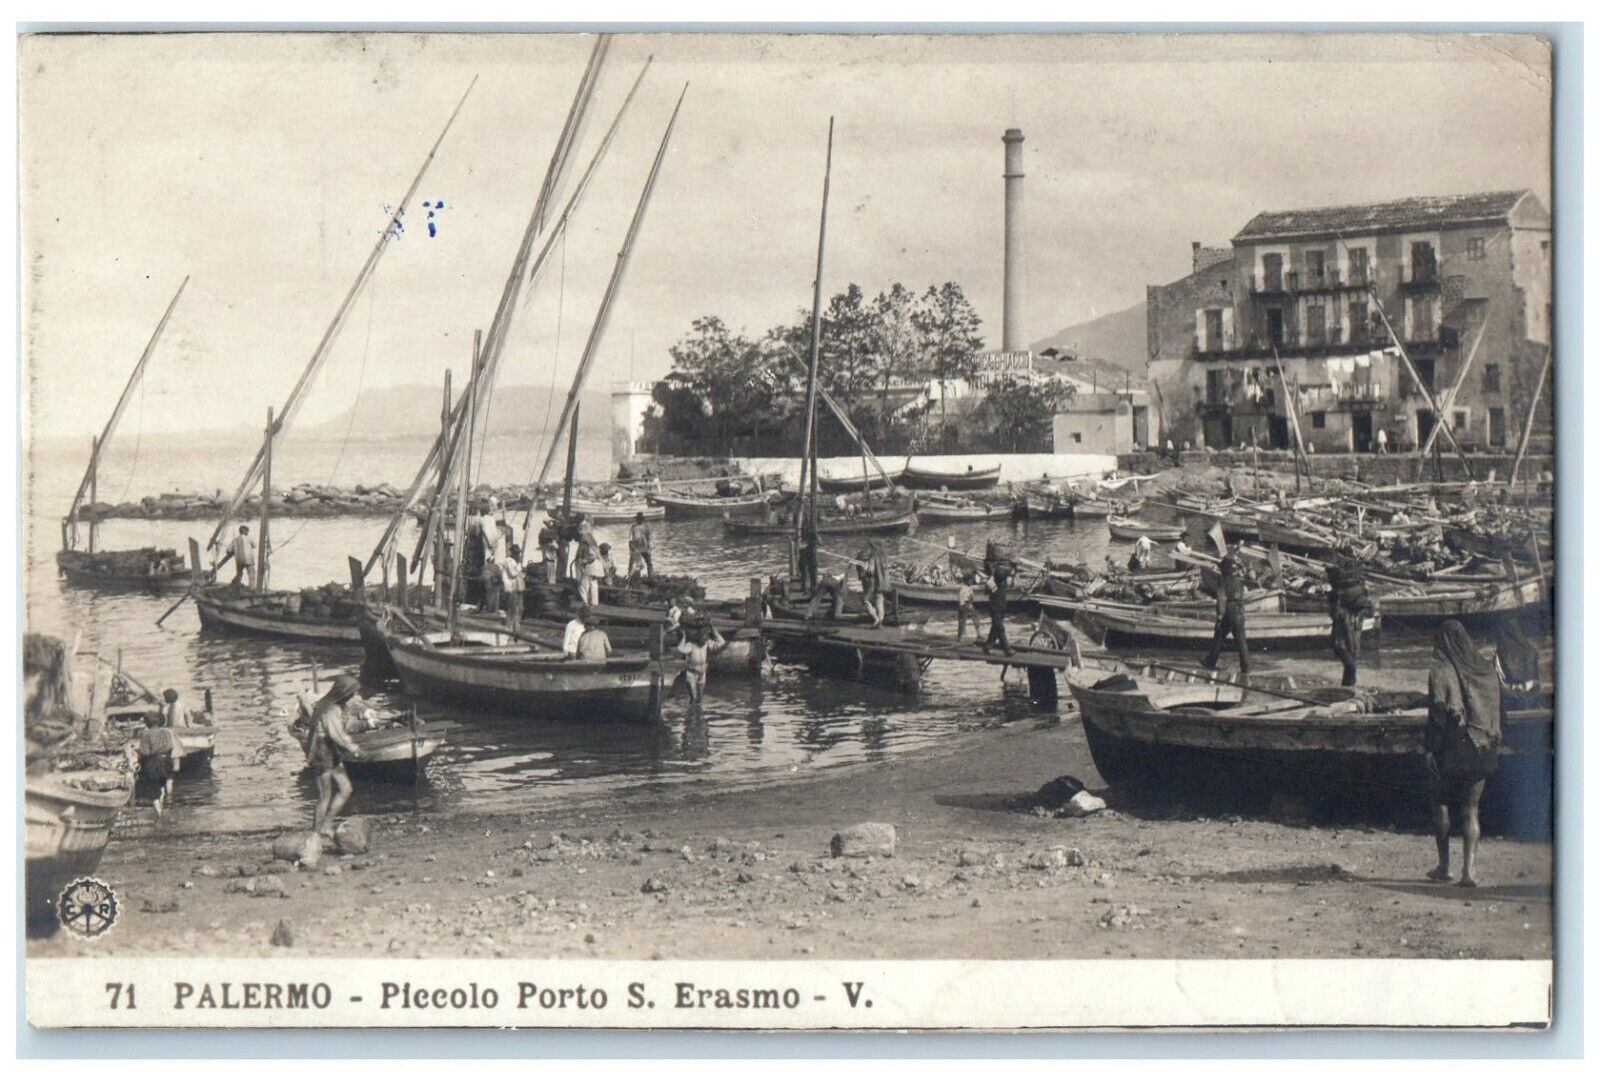 c1910 Piccolo Porto S. Erasmo V. Palermo Sicily Italy RPPC Photo Postcard